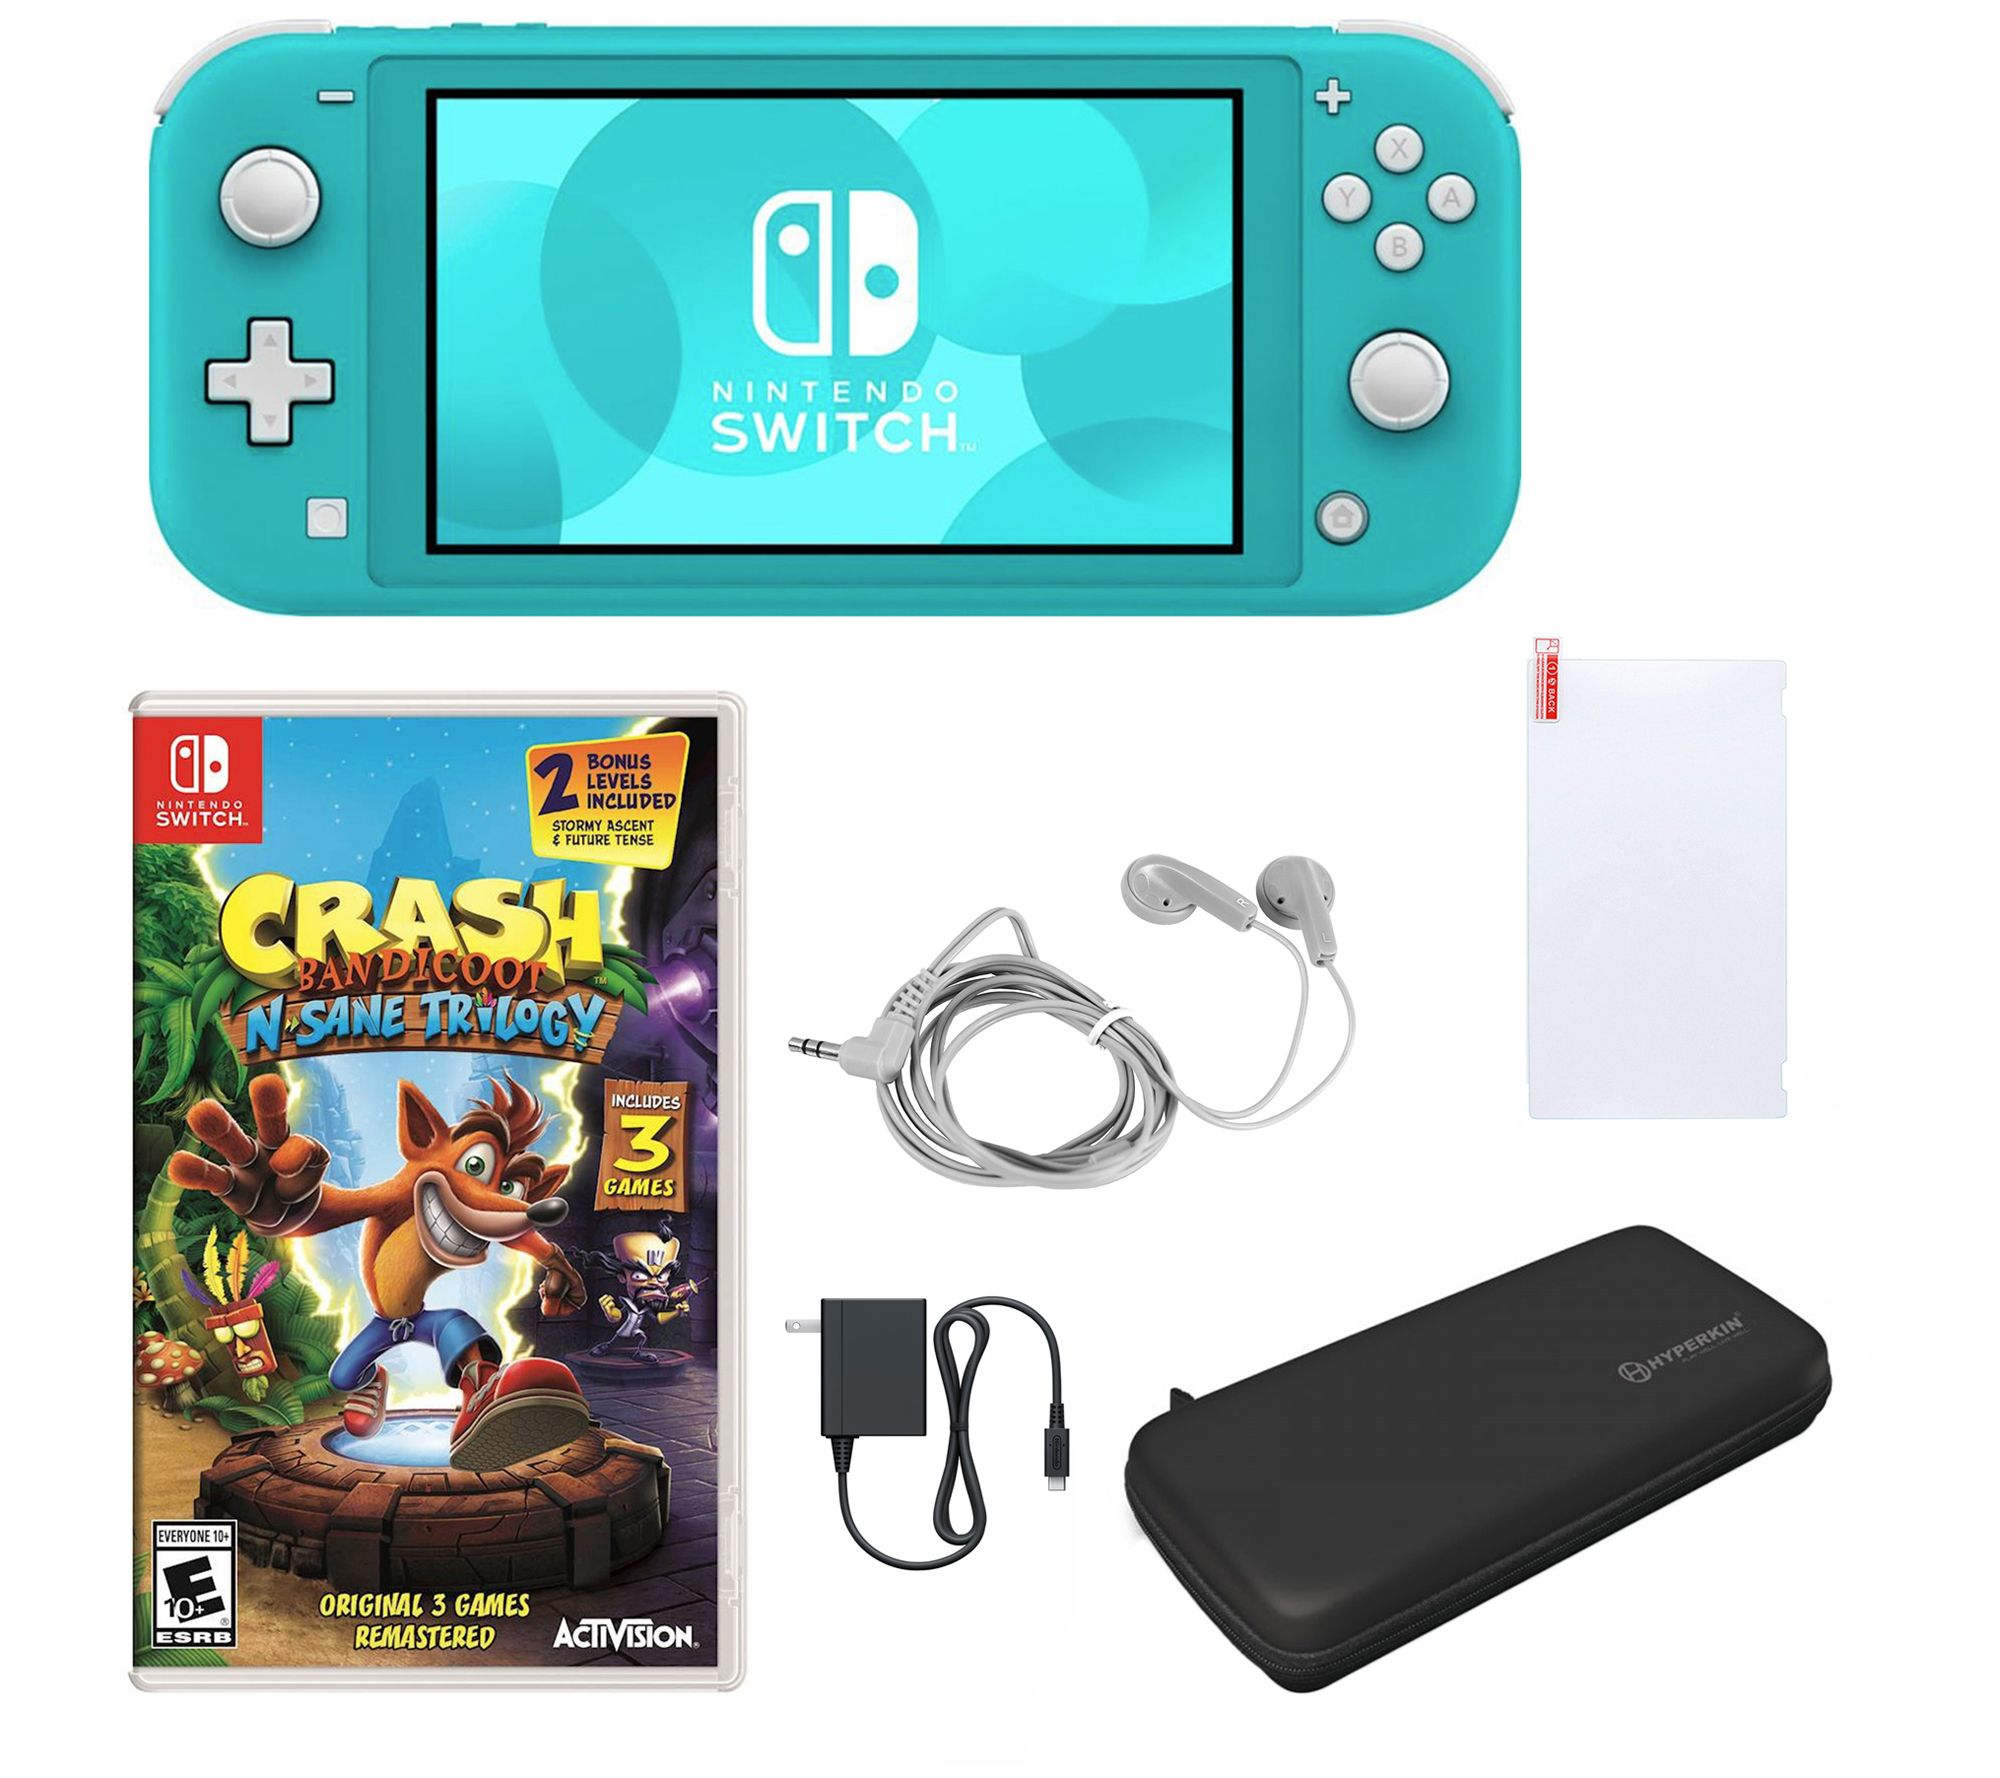 Crash Bandicoot N. Sane Trilogy - Nintendo Switch : Target